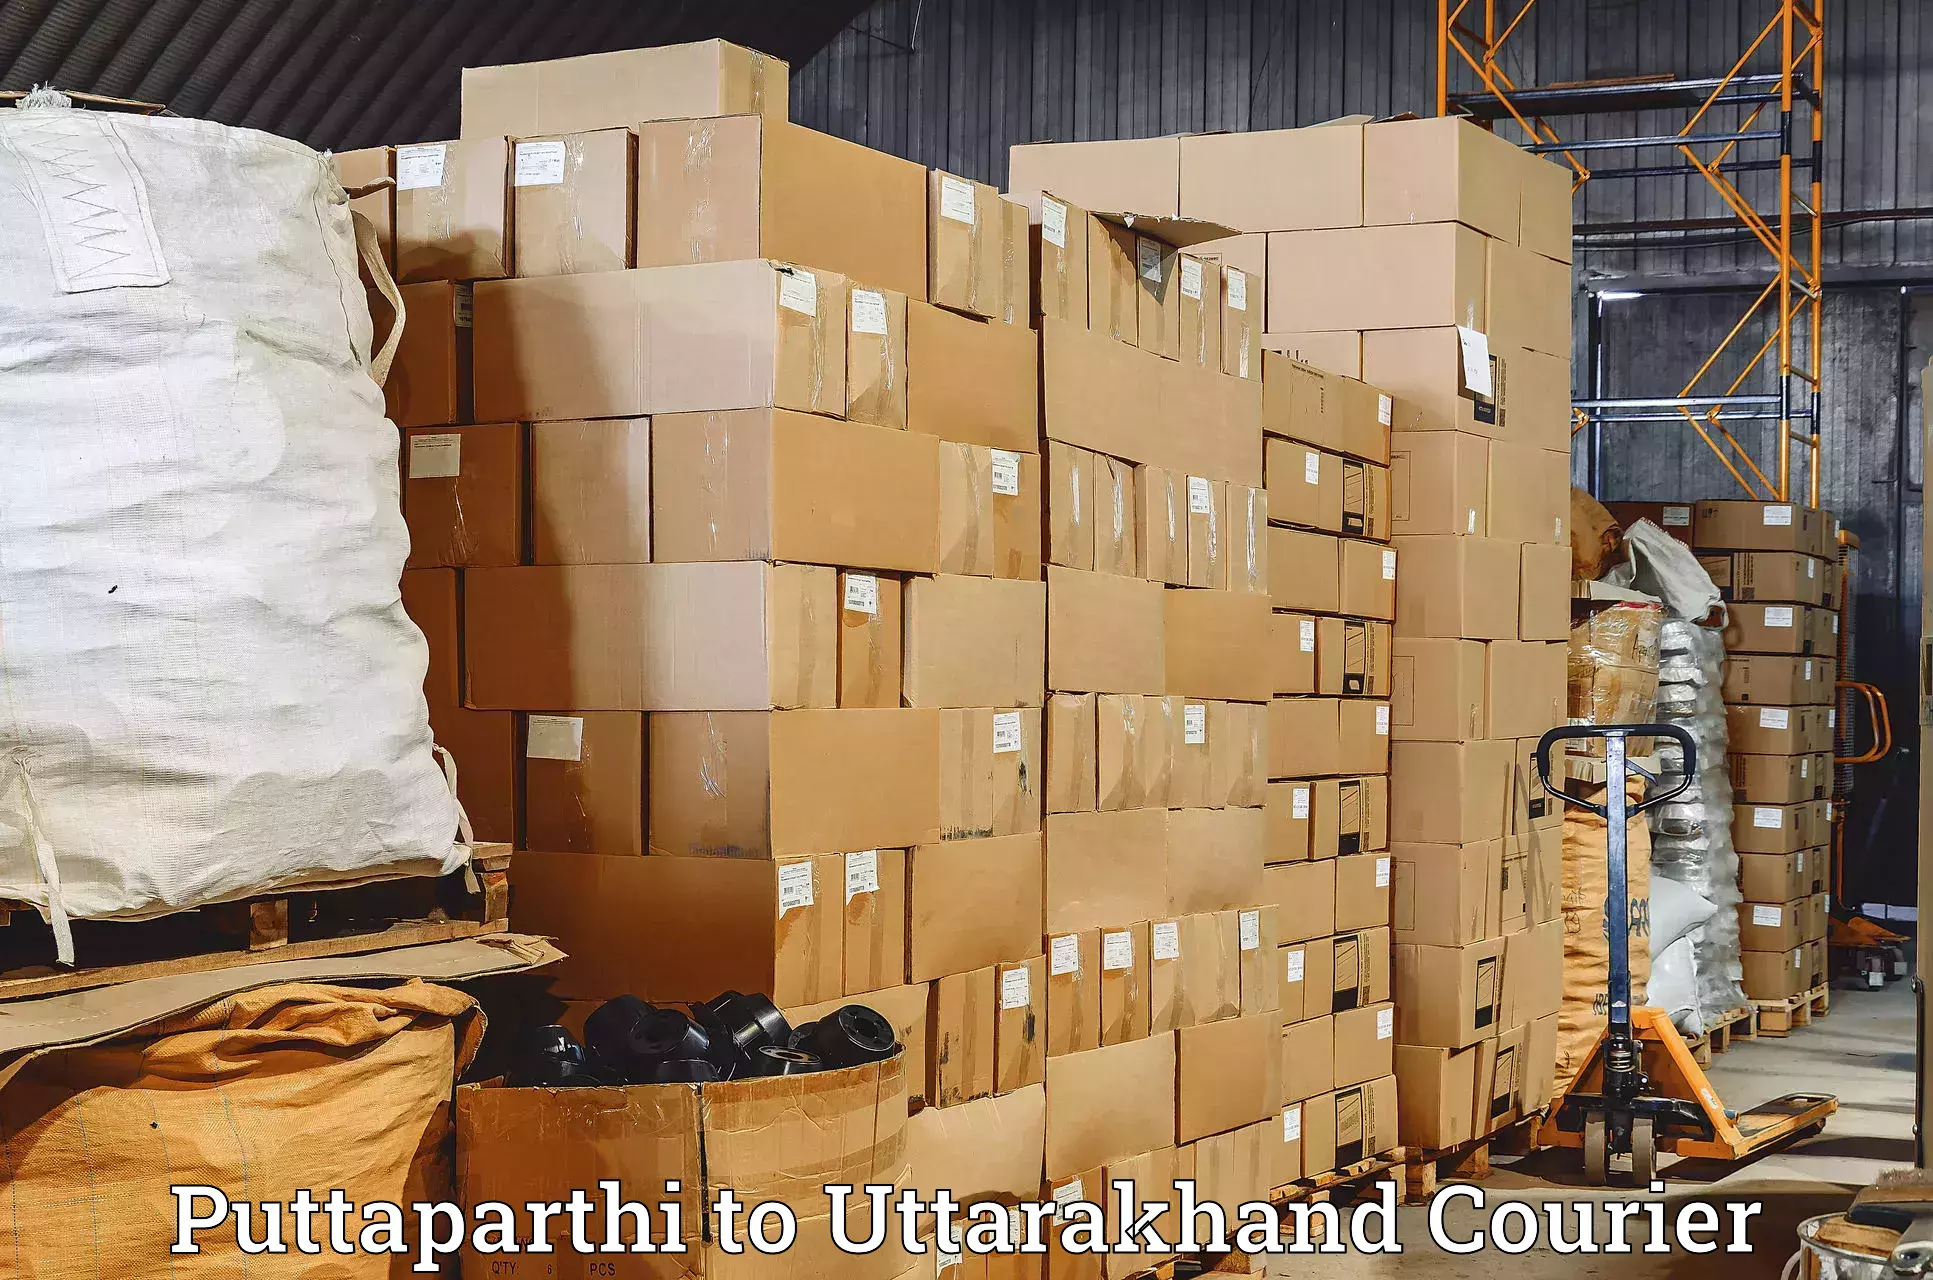 Courier service innovation Puttaparthi to Dehradun